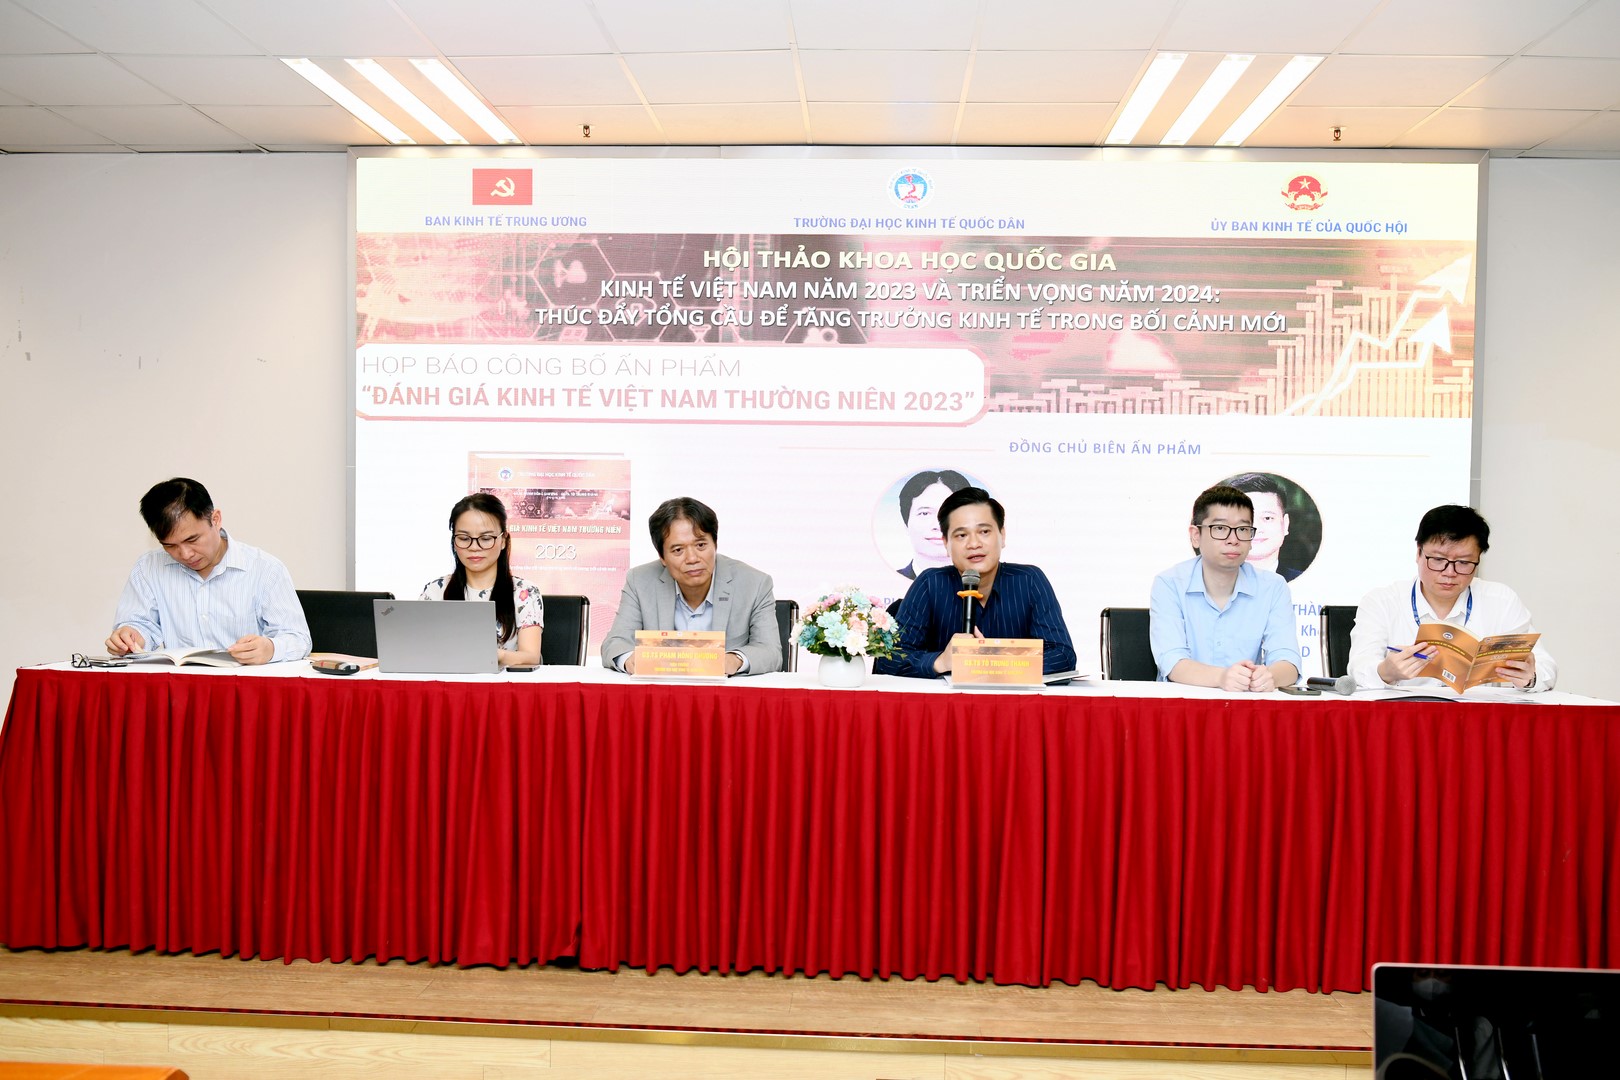 Trường Đại học Kinh tế Quốc dân công bố Ấn phẩm Đánh giá Kinh tế Việt Nam thường niên 2023 -0